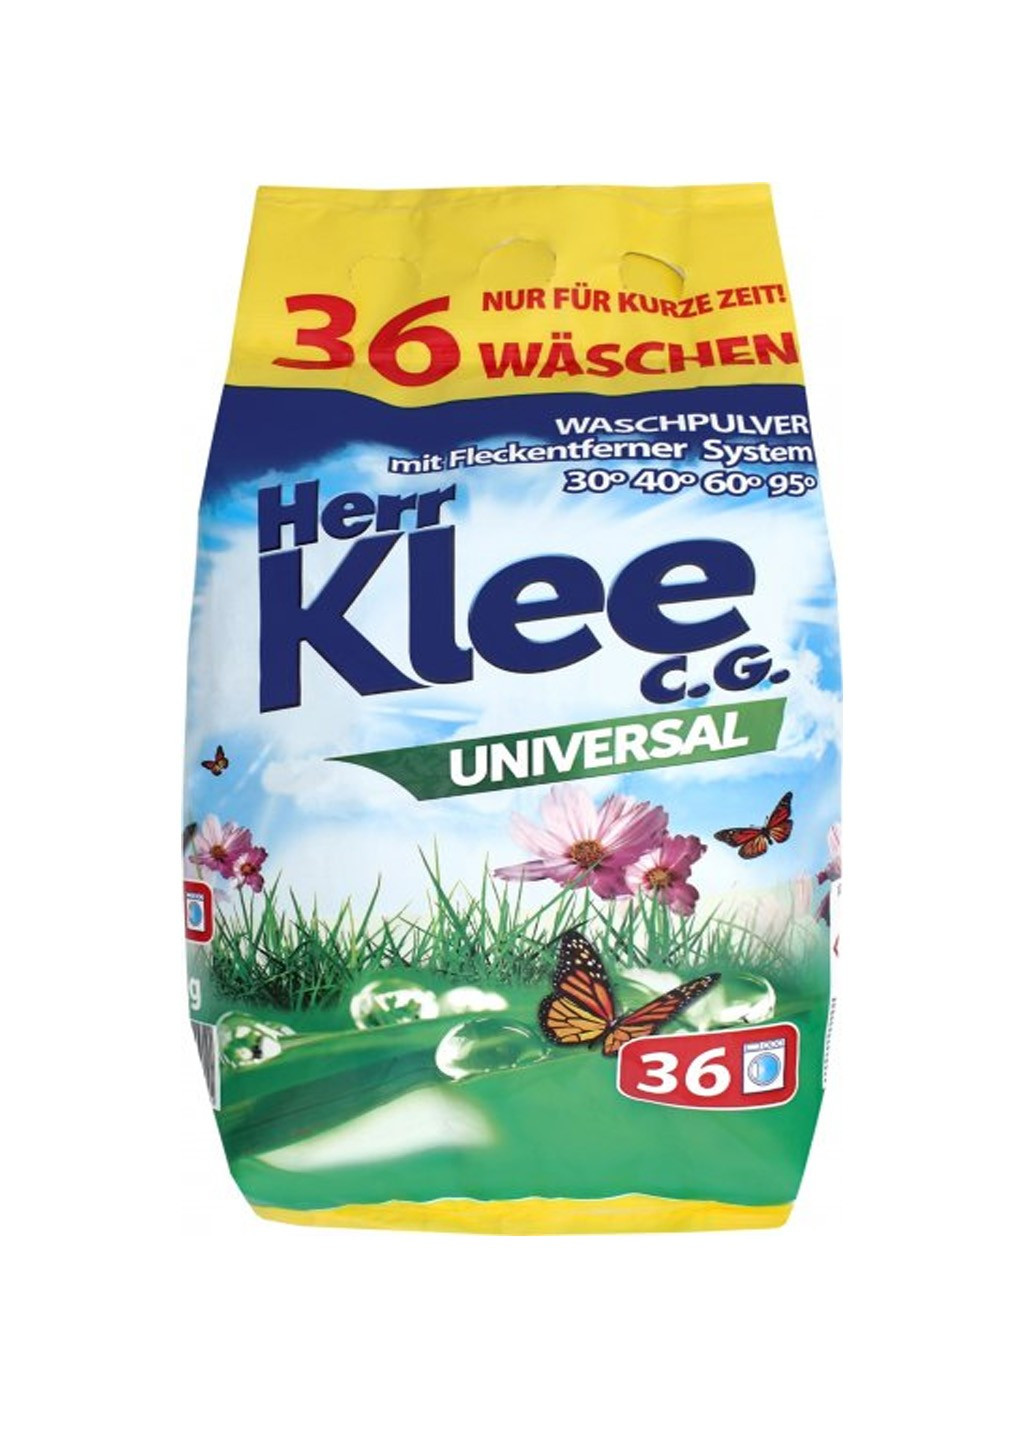 Порошок для прання universal (3 кг) Klee (264668504)